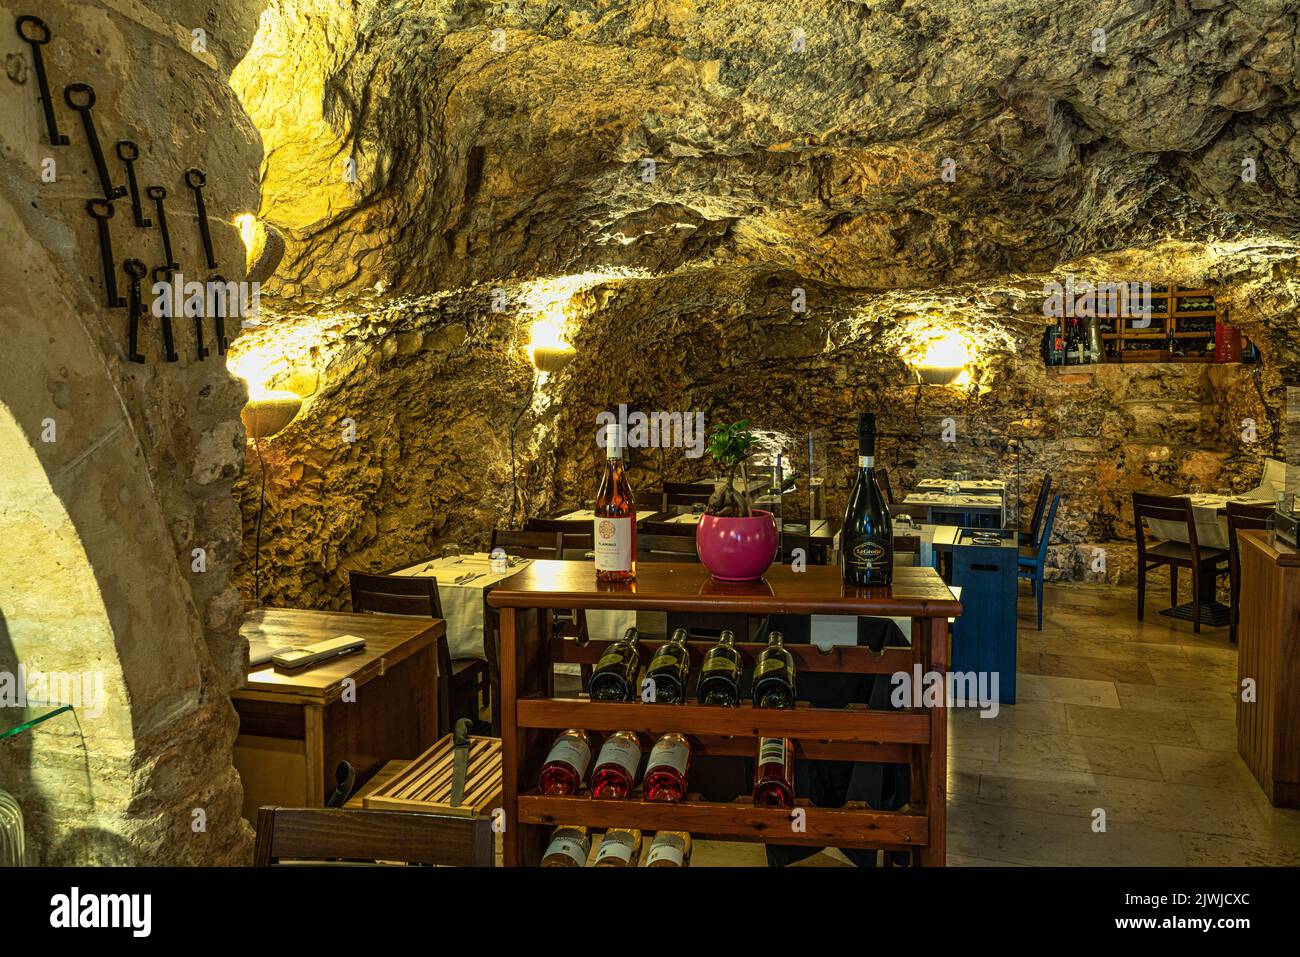 Restaurant caractéristique et cave creusée dans une grotte de la ville de Vieste. Vieste, province de Foggia, Puglia, Italie, Europe Banque D'Images